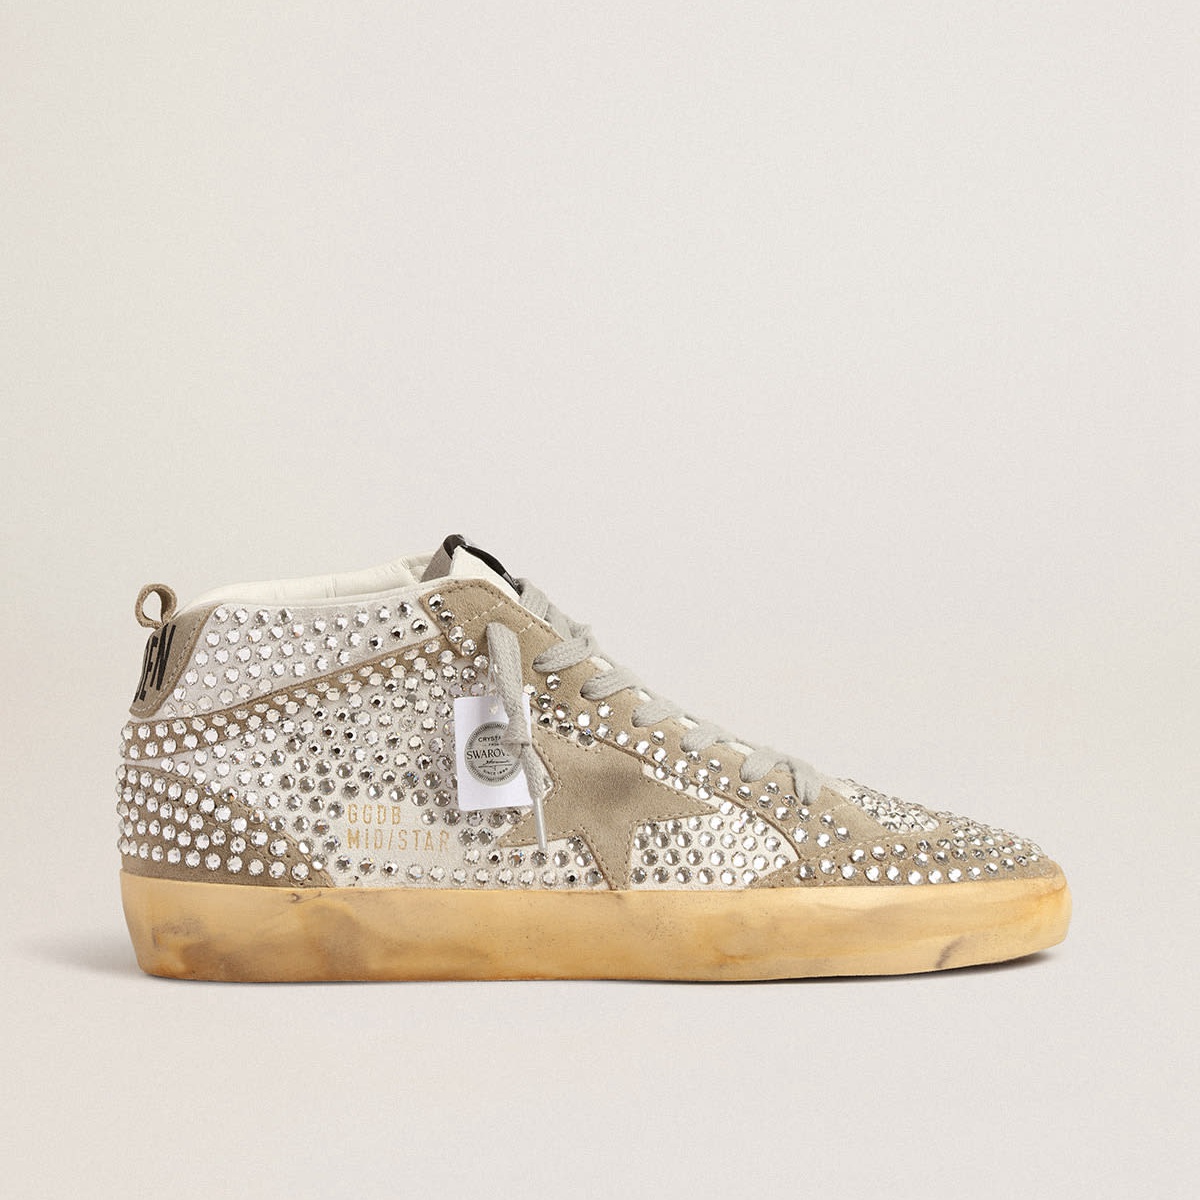 Golden Goose Mid Star Sneaker in Weiß und Taubengrau mit Swarovski-Kristallen: Einzigartiger Stil trifft auf Qualität